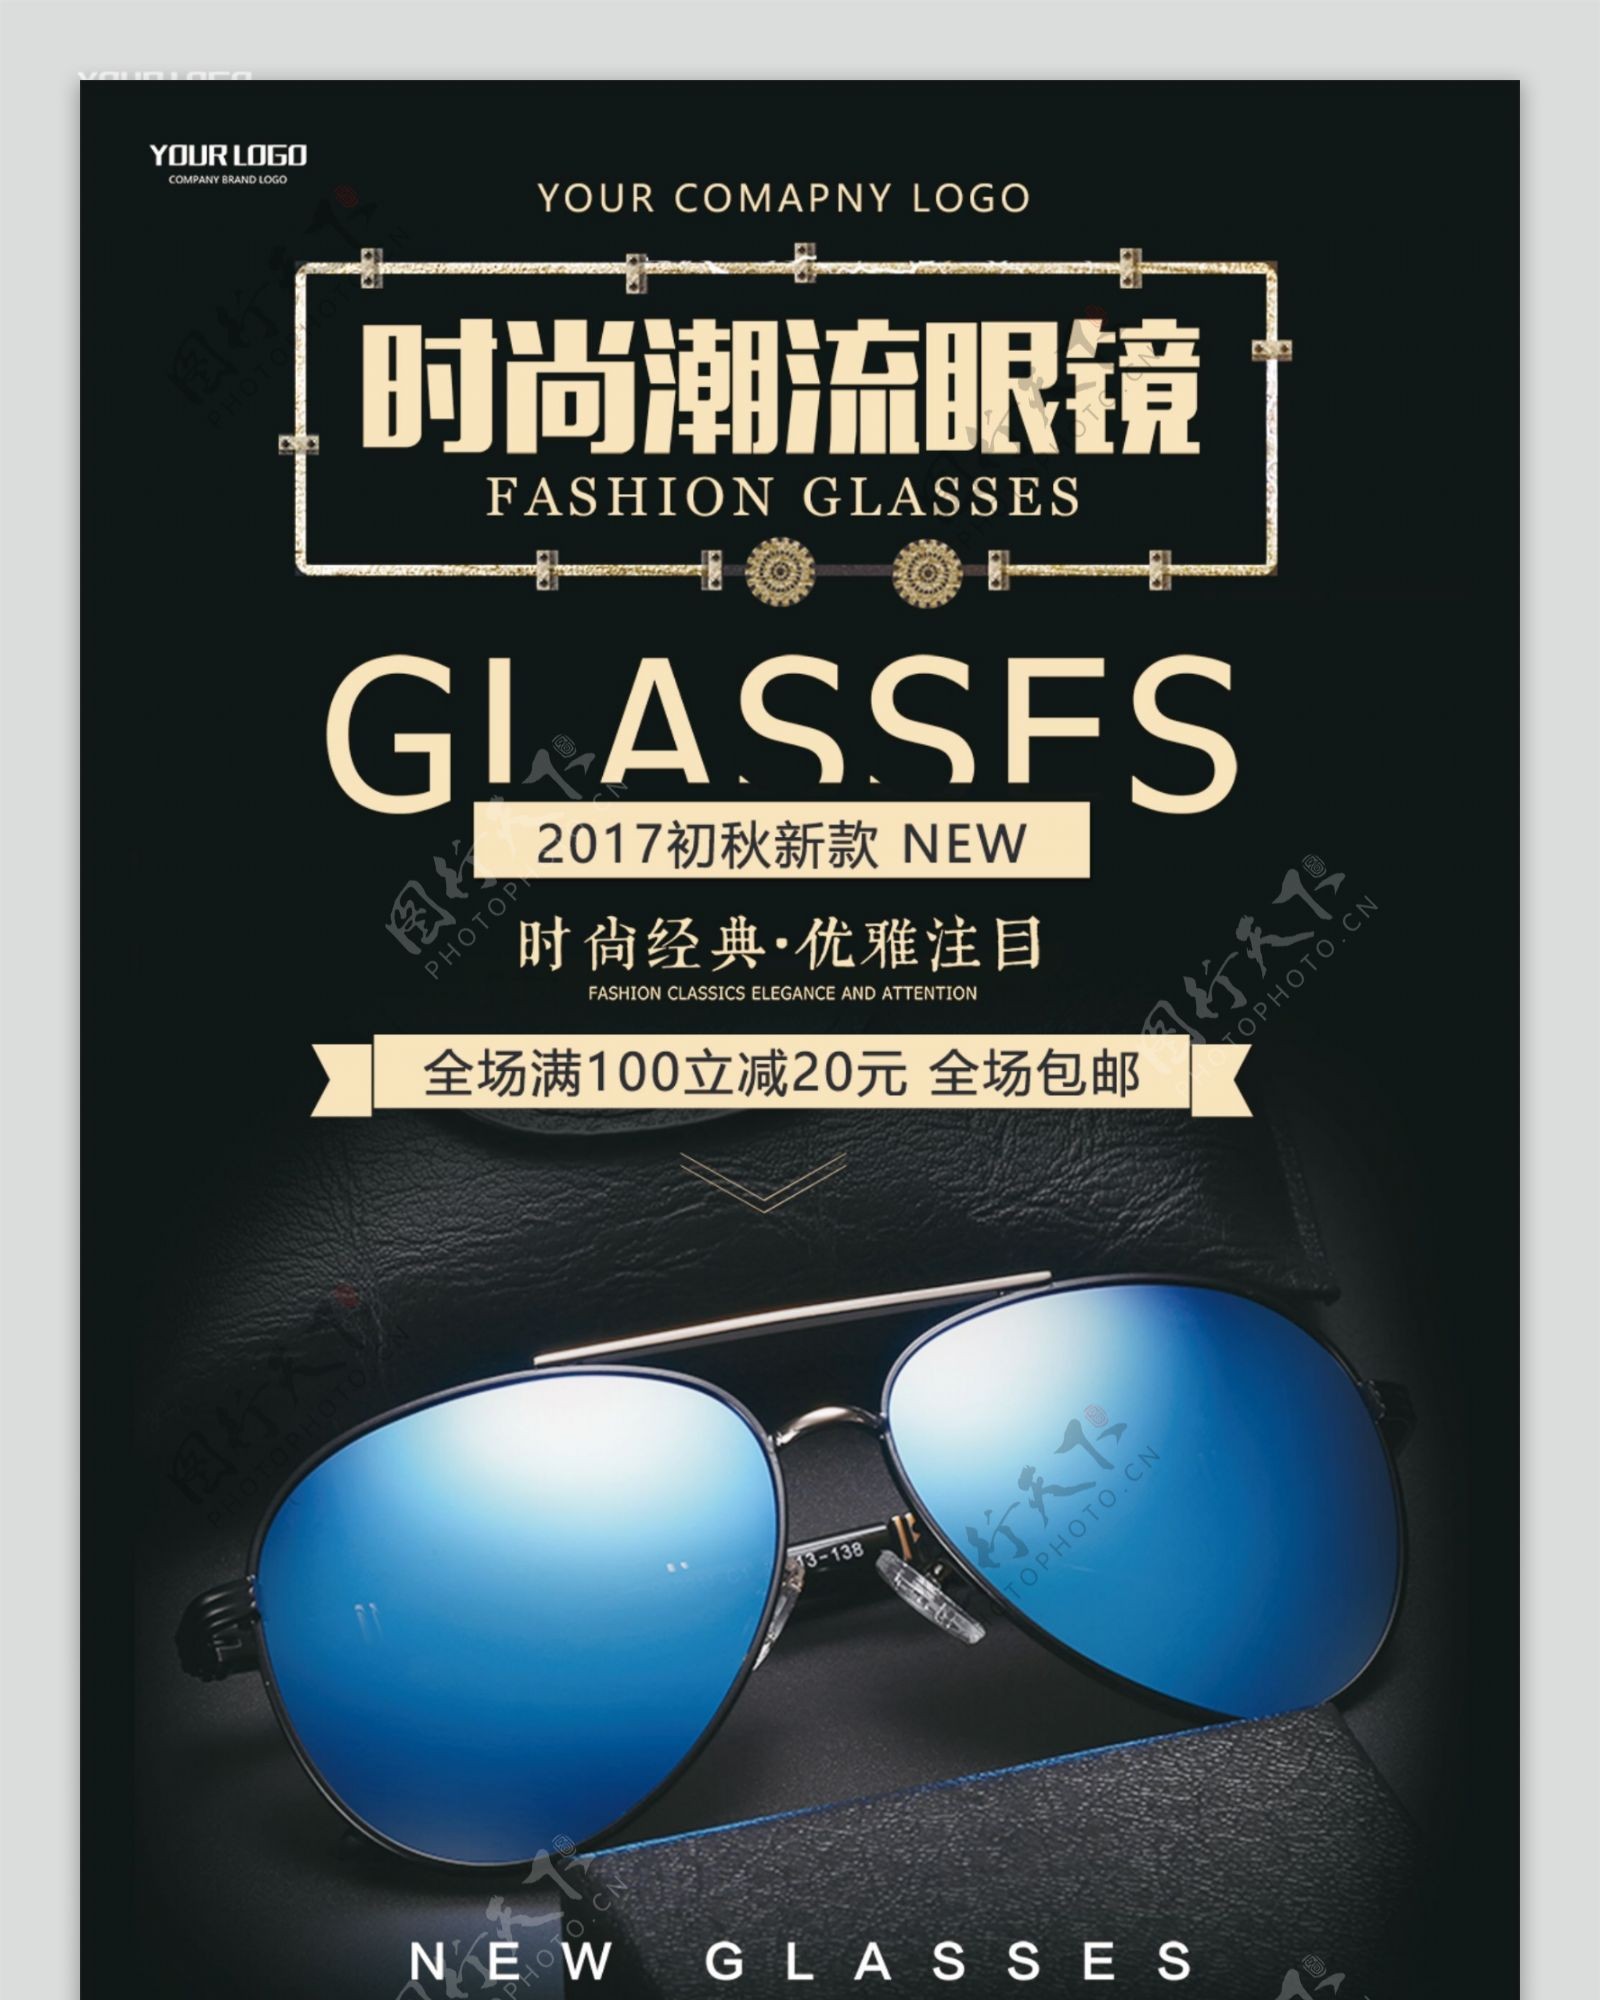 新品眼镜活动促销宣传展架设计